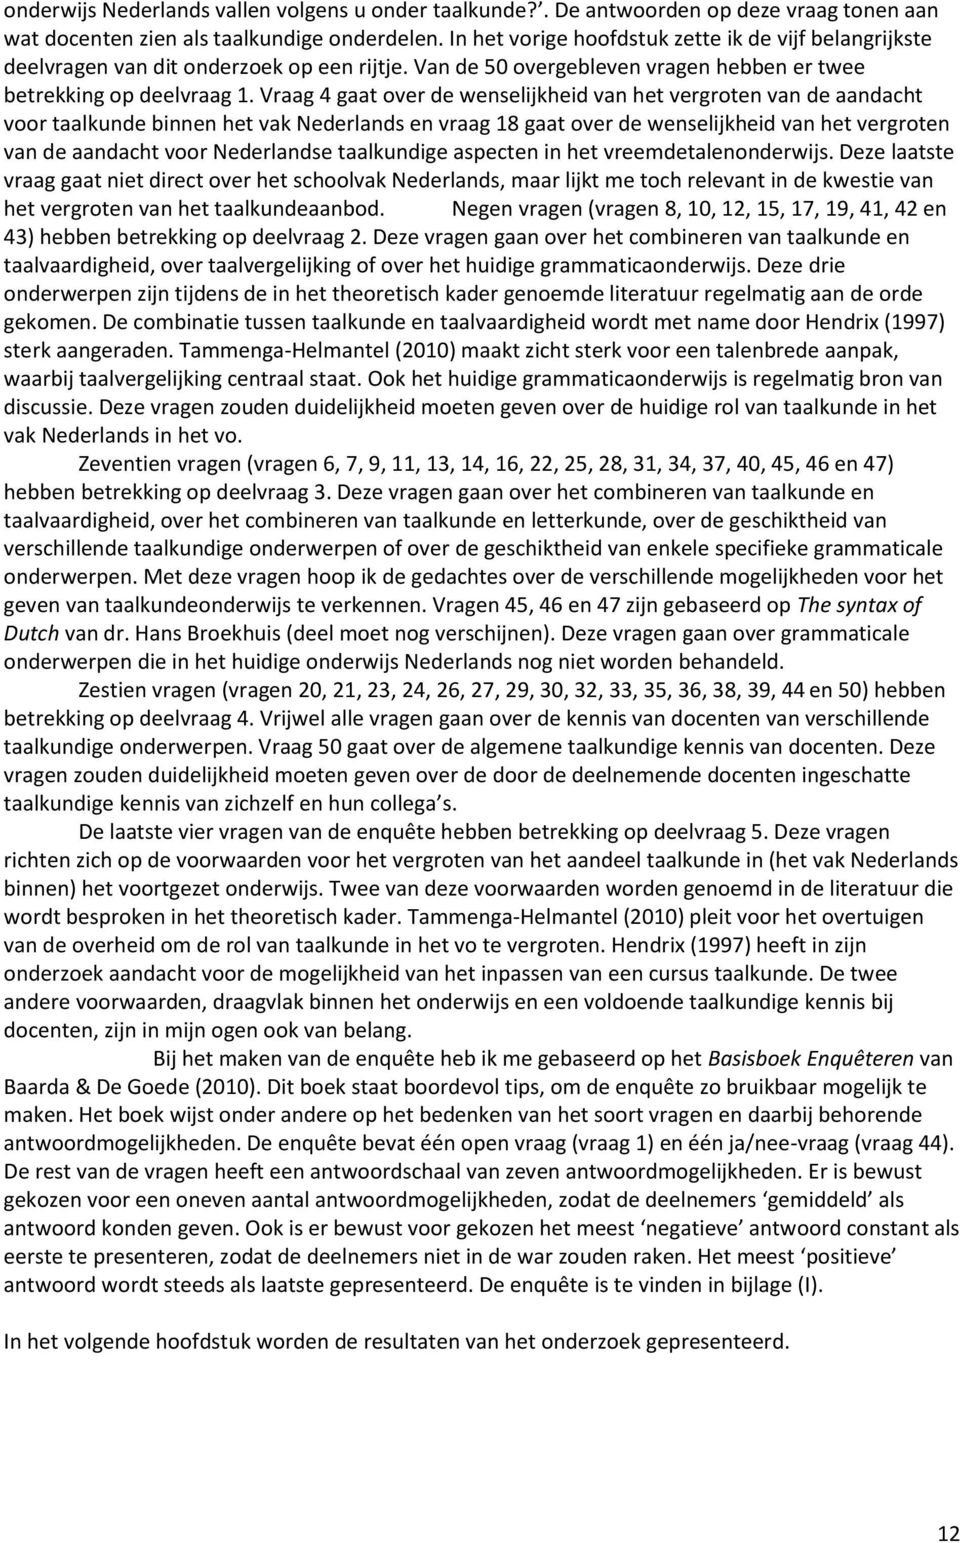 Vraag 4 gaat over de wenselijkheid van het vergroten van de aandacht voor taalkunde binnen het vak Nederlands en vraag 18 gaat over de wenselijkheid van het vergroten van de aandacht voor Nederlandse